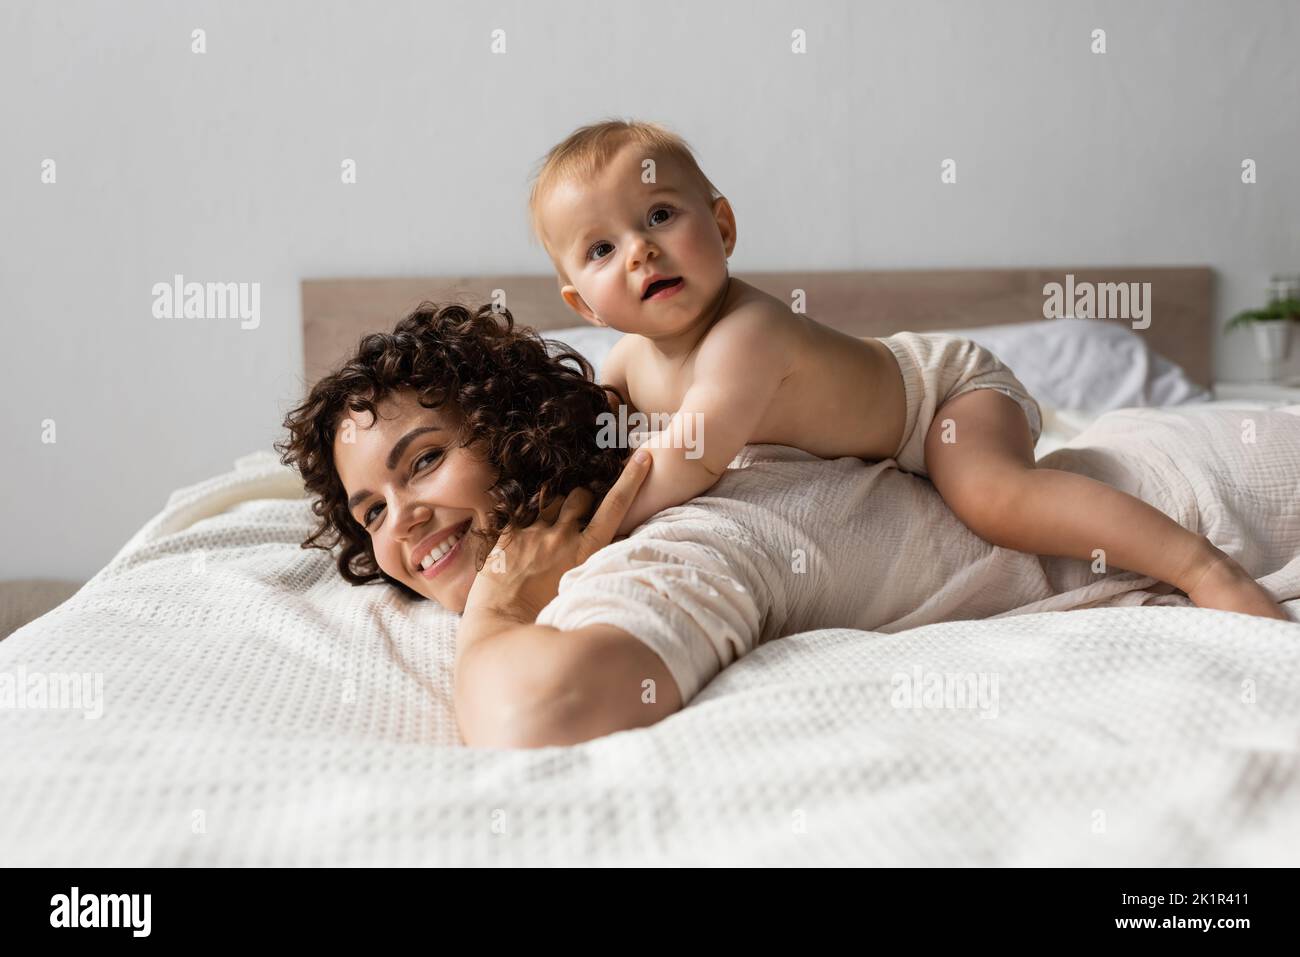 bambino bambino sdraiato sulla parte posteriore della madre felice con i capelli ricci in camera da letto, immagine di scorta Foto Stock